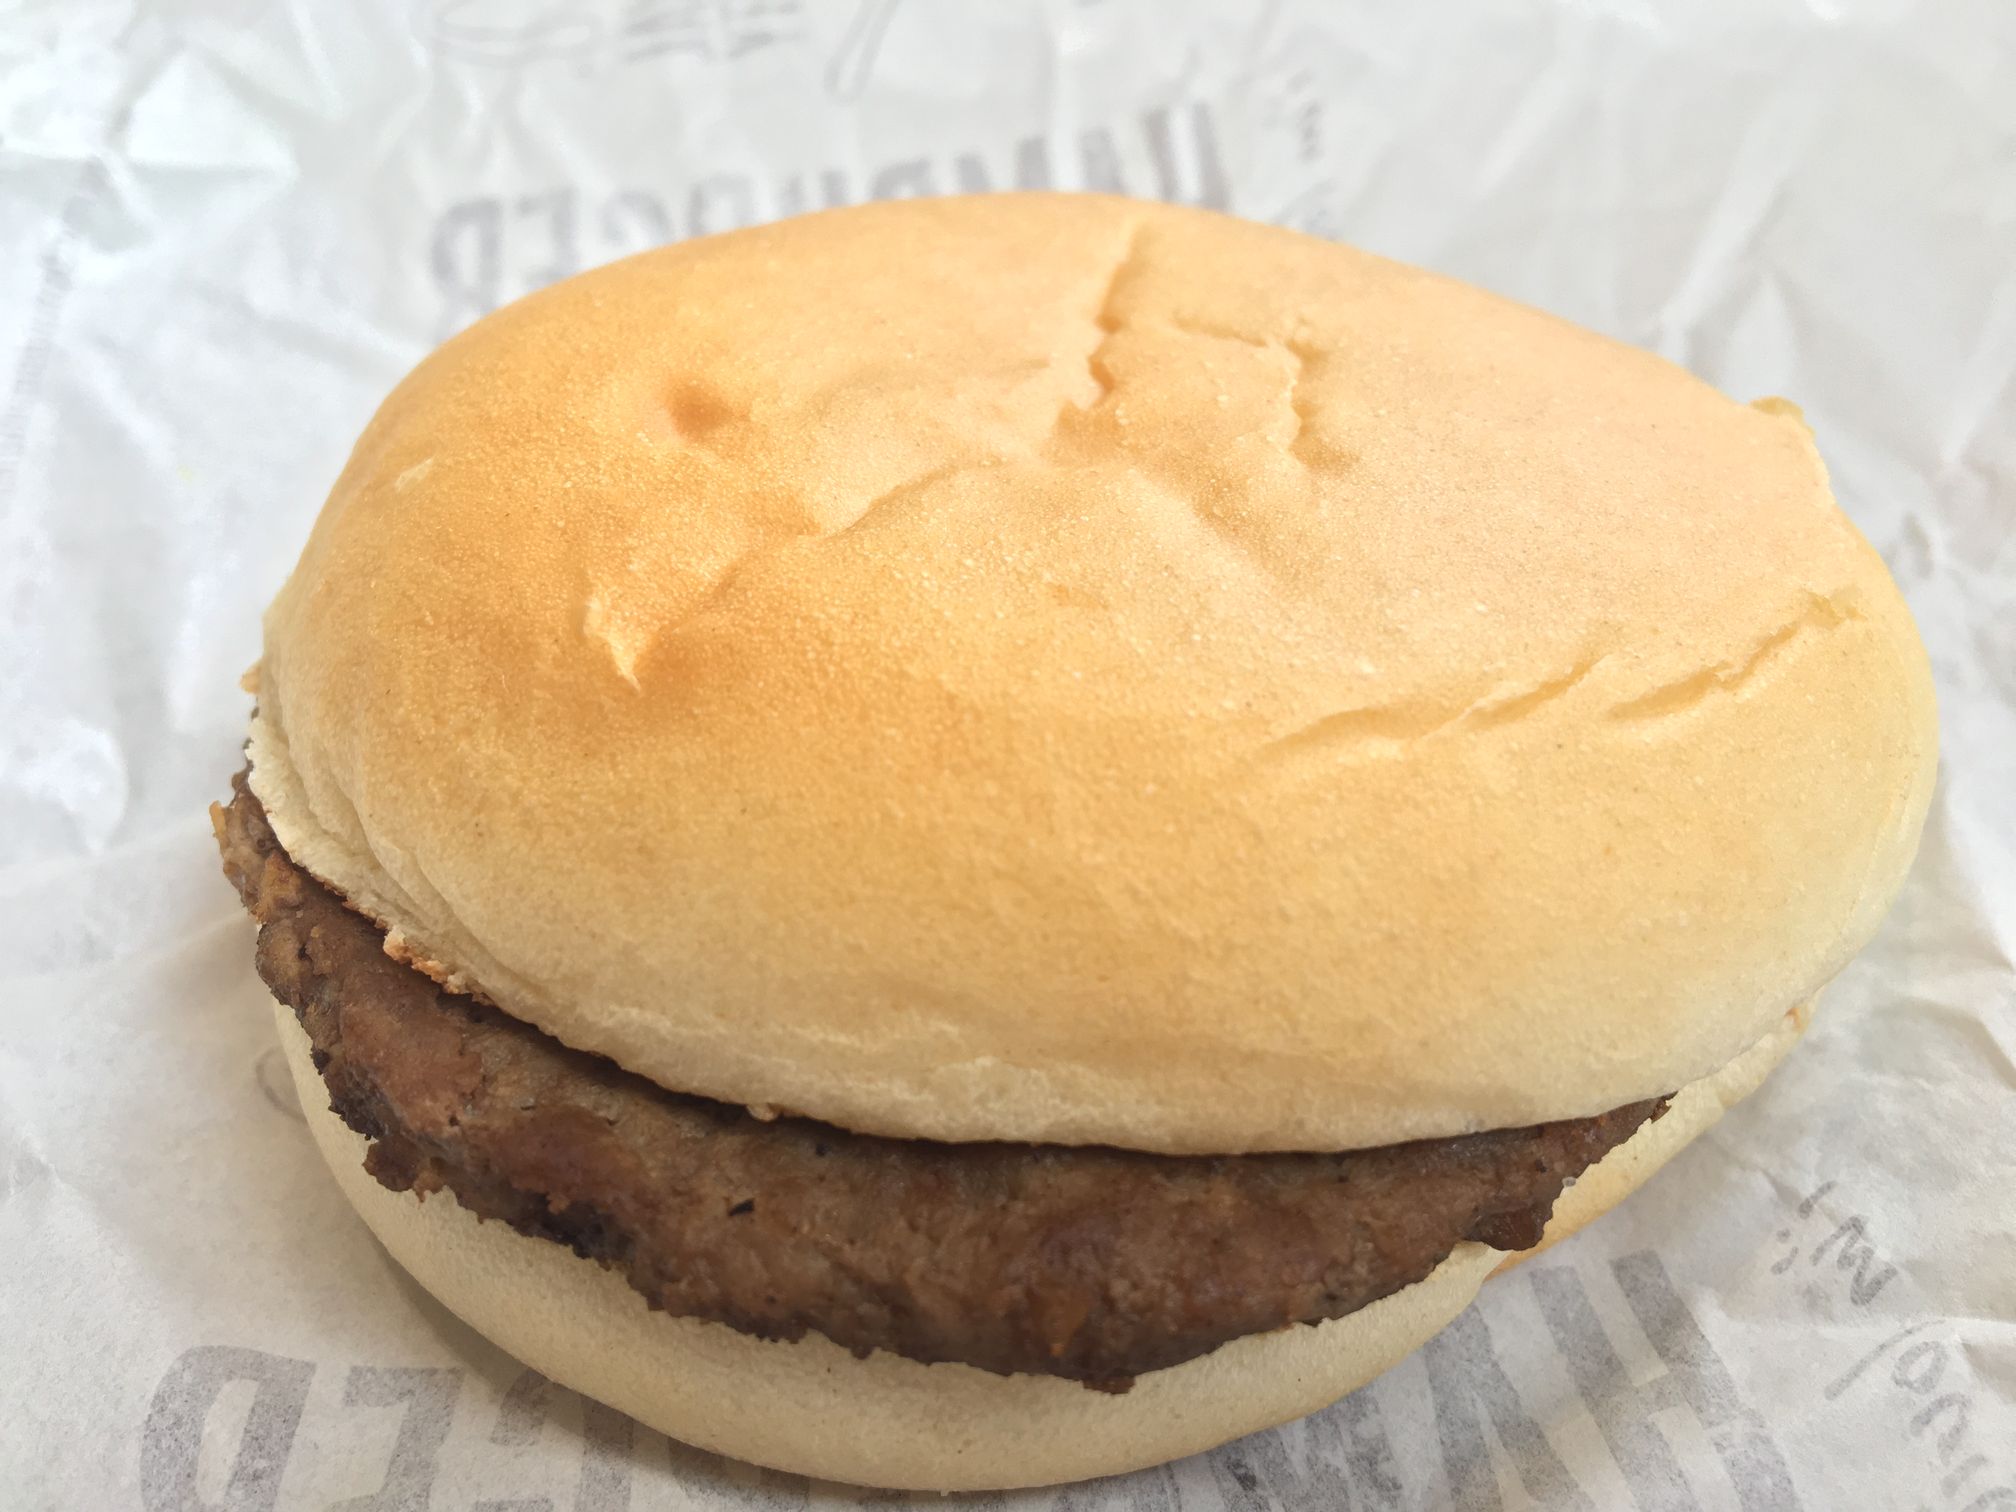 McDonald's Hamburger